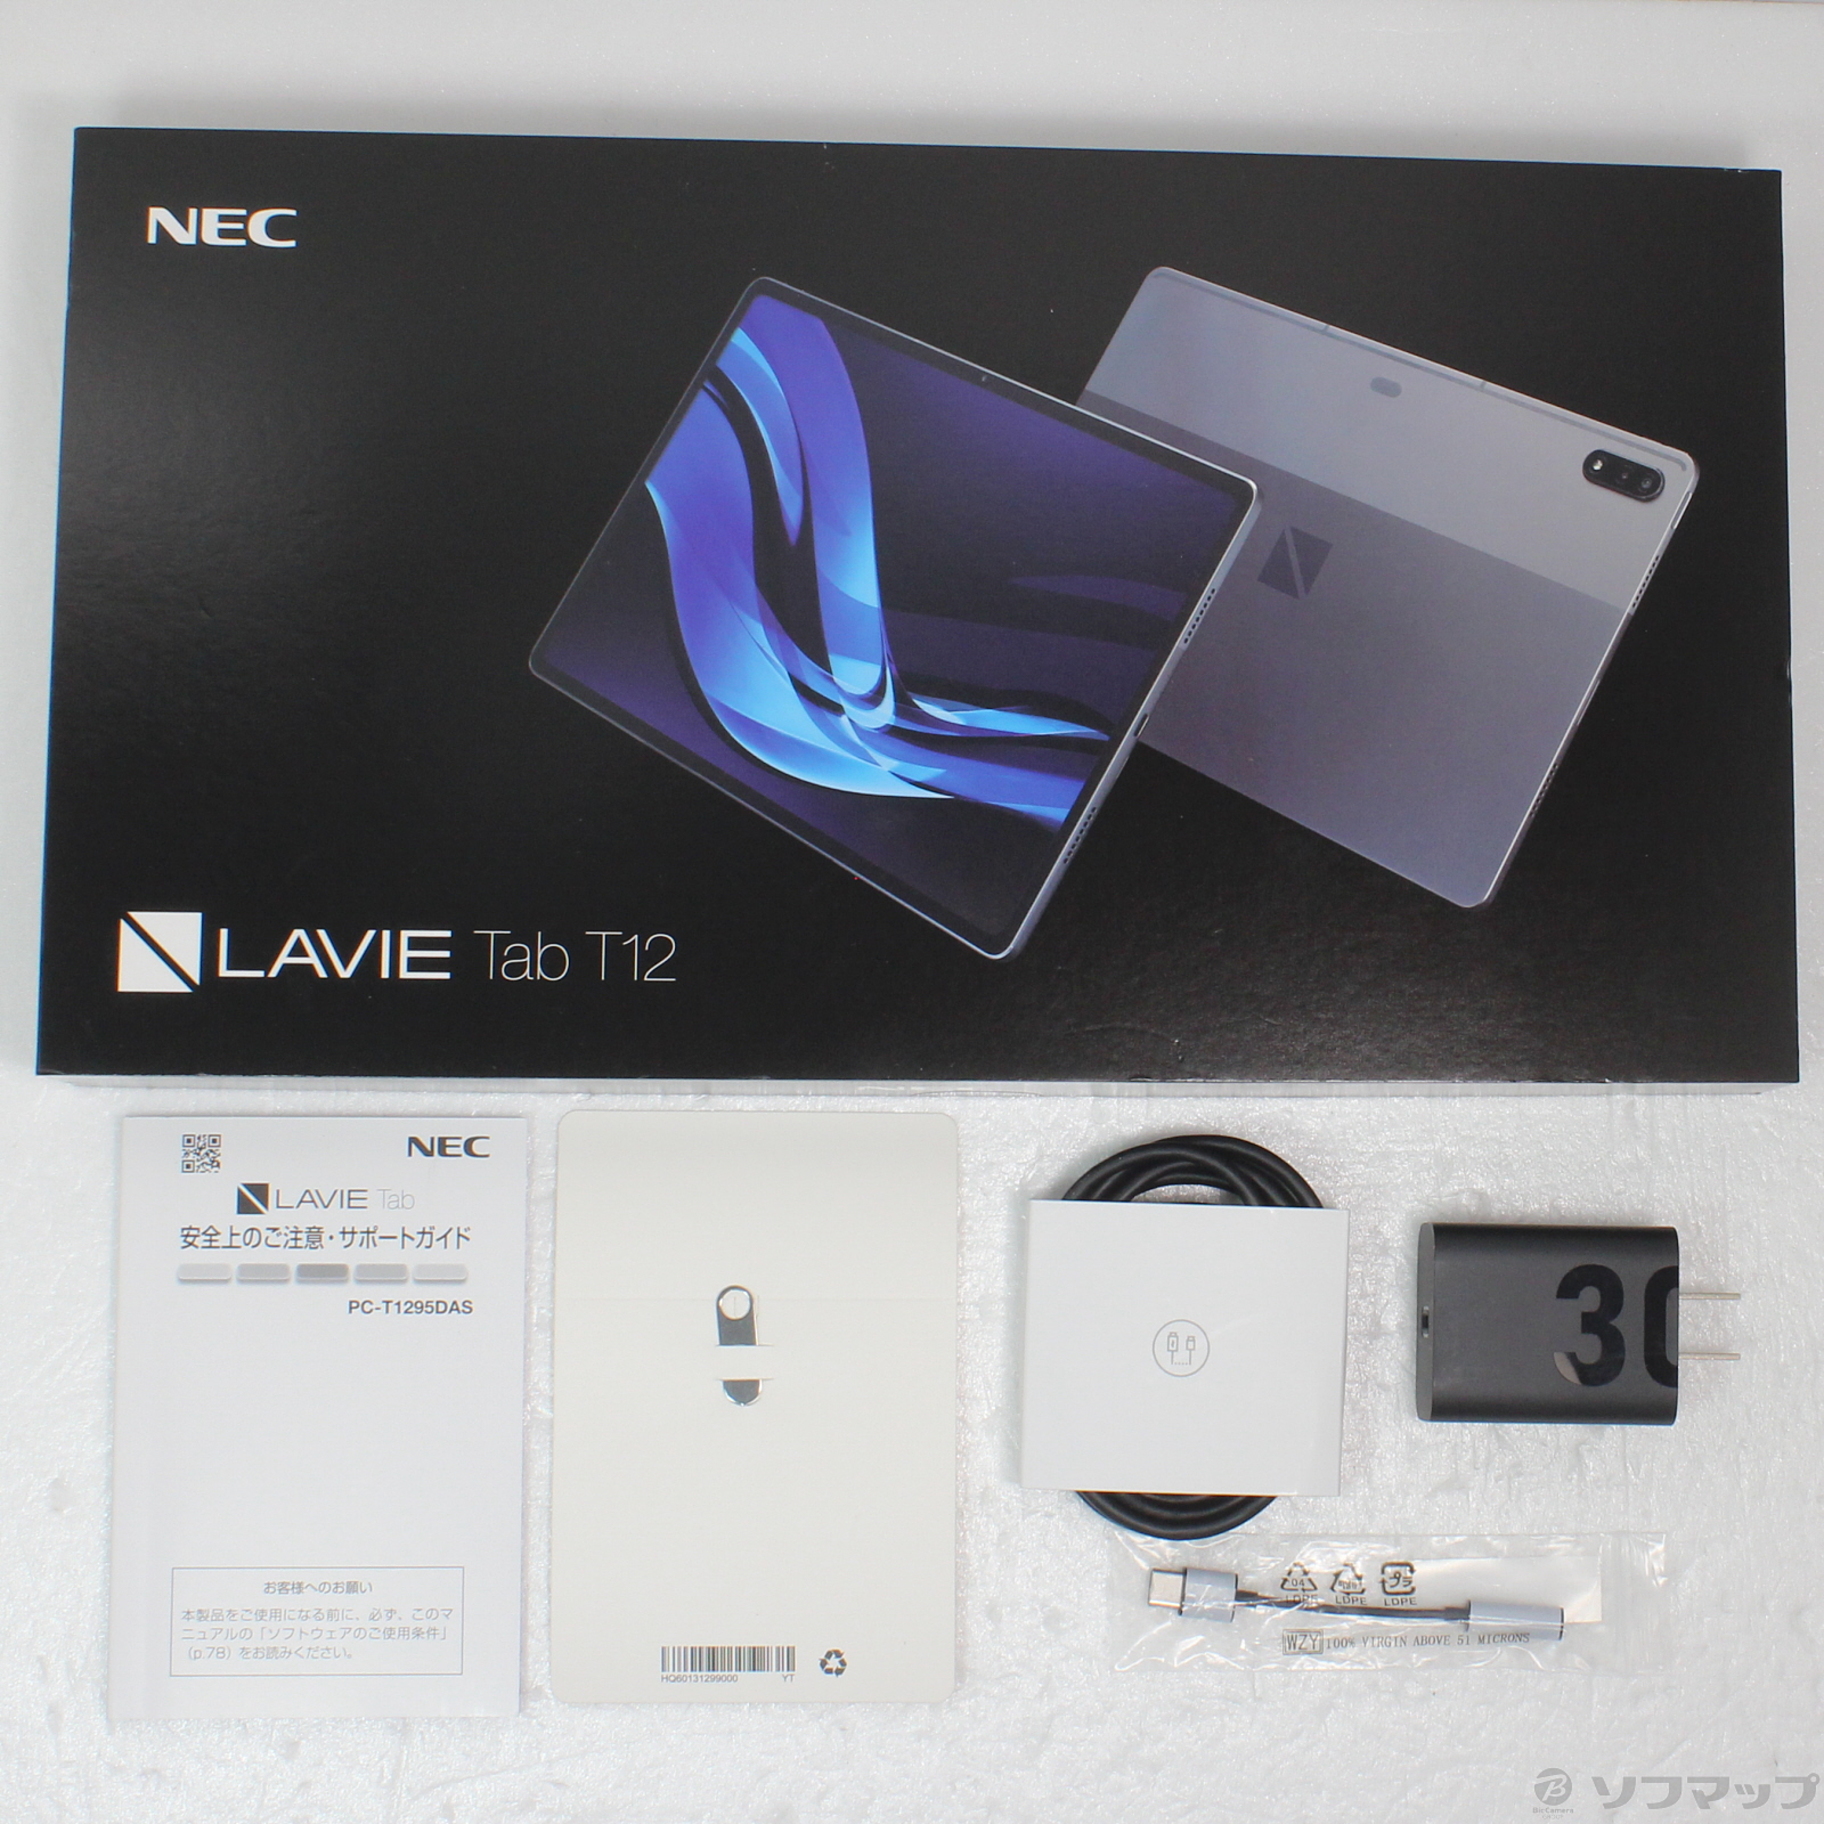 〔展示品〕 LAVIE Tab T12 T1295／DAS 256GB ストームグレー PC-T1295DAS Wi-Fi